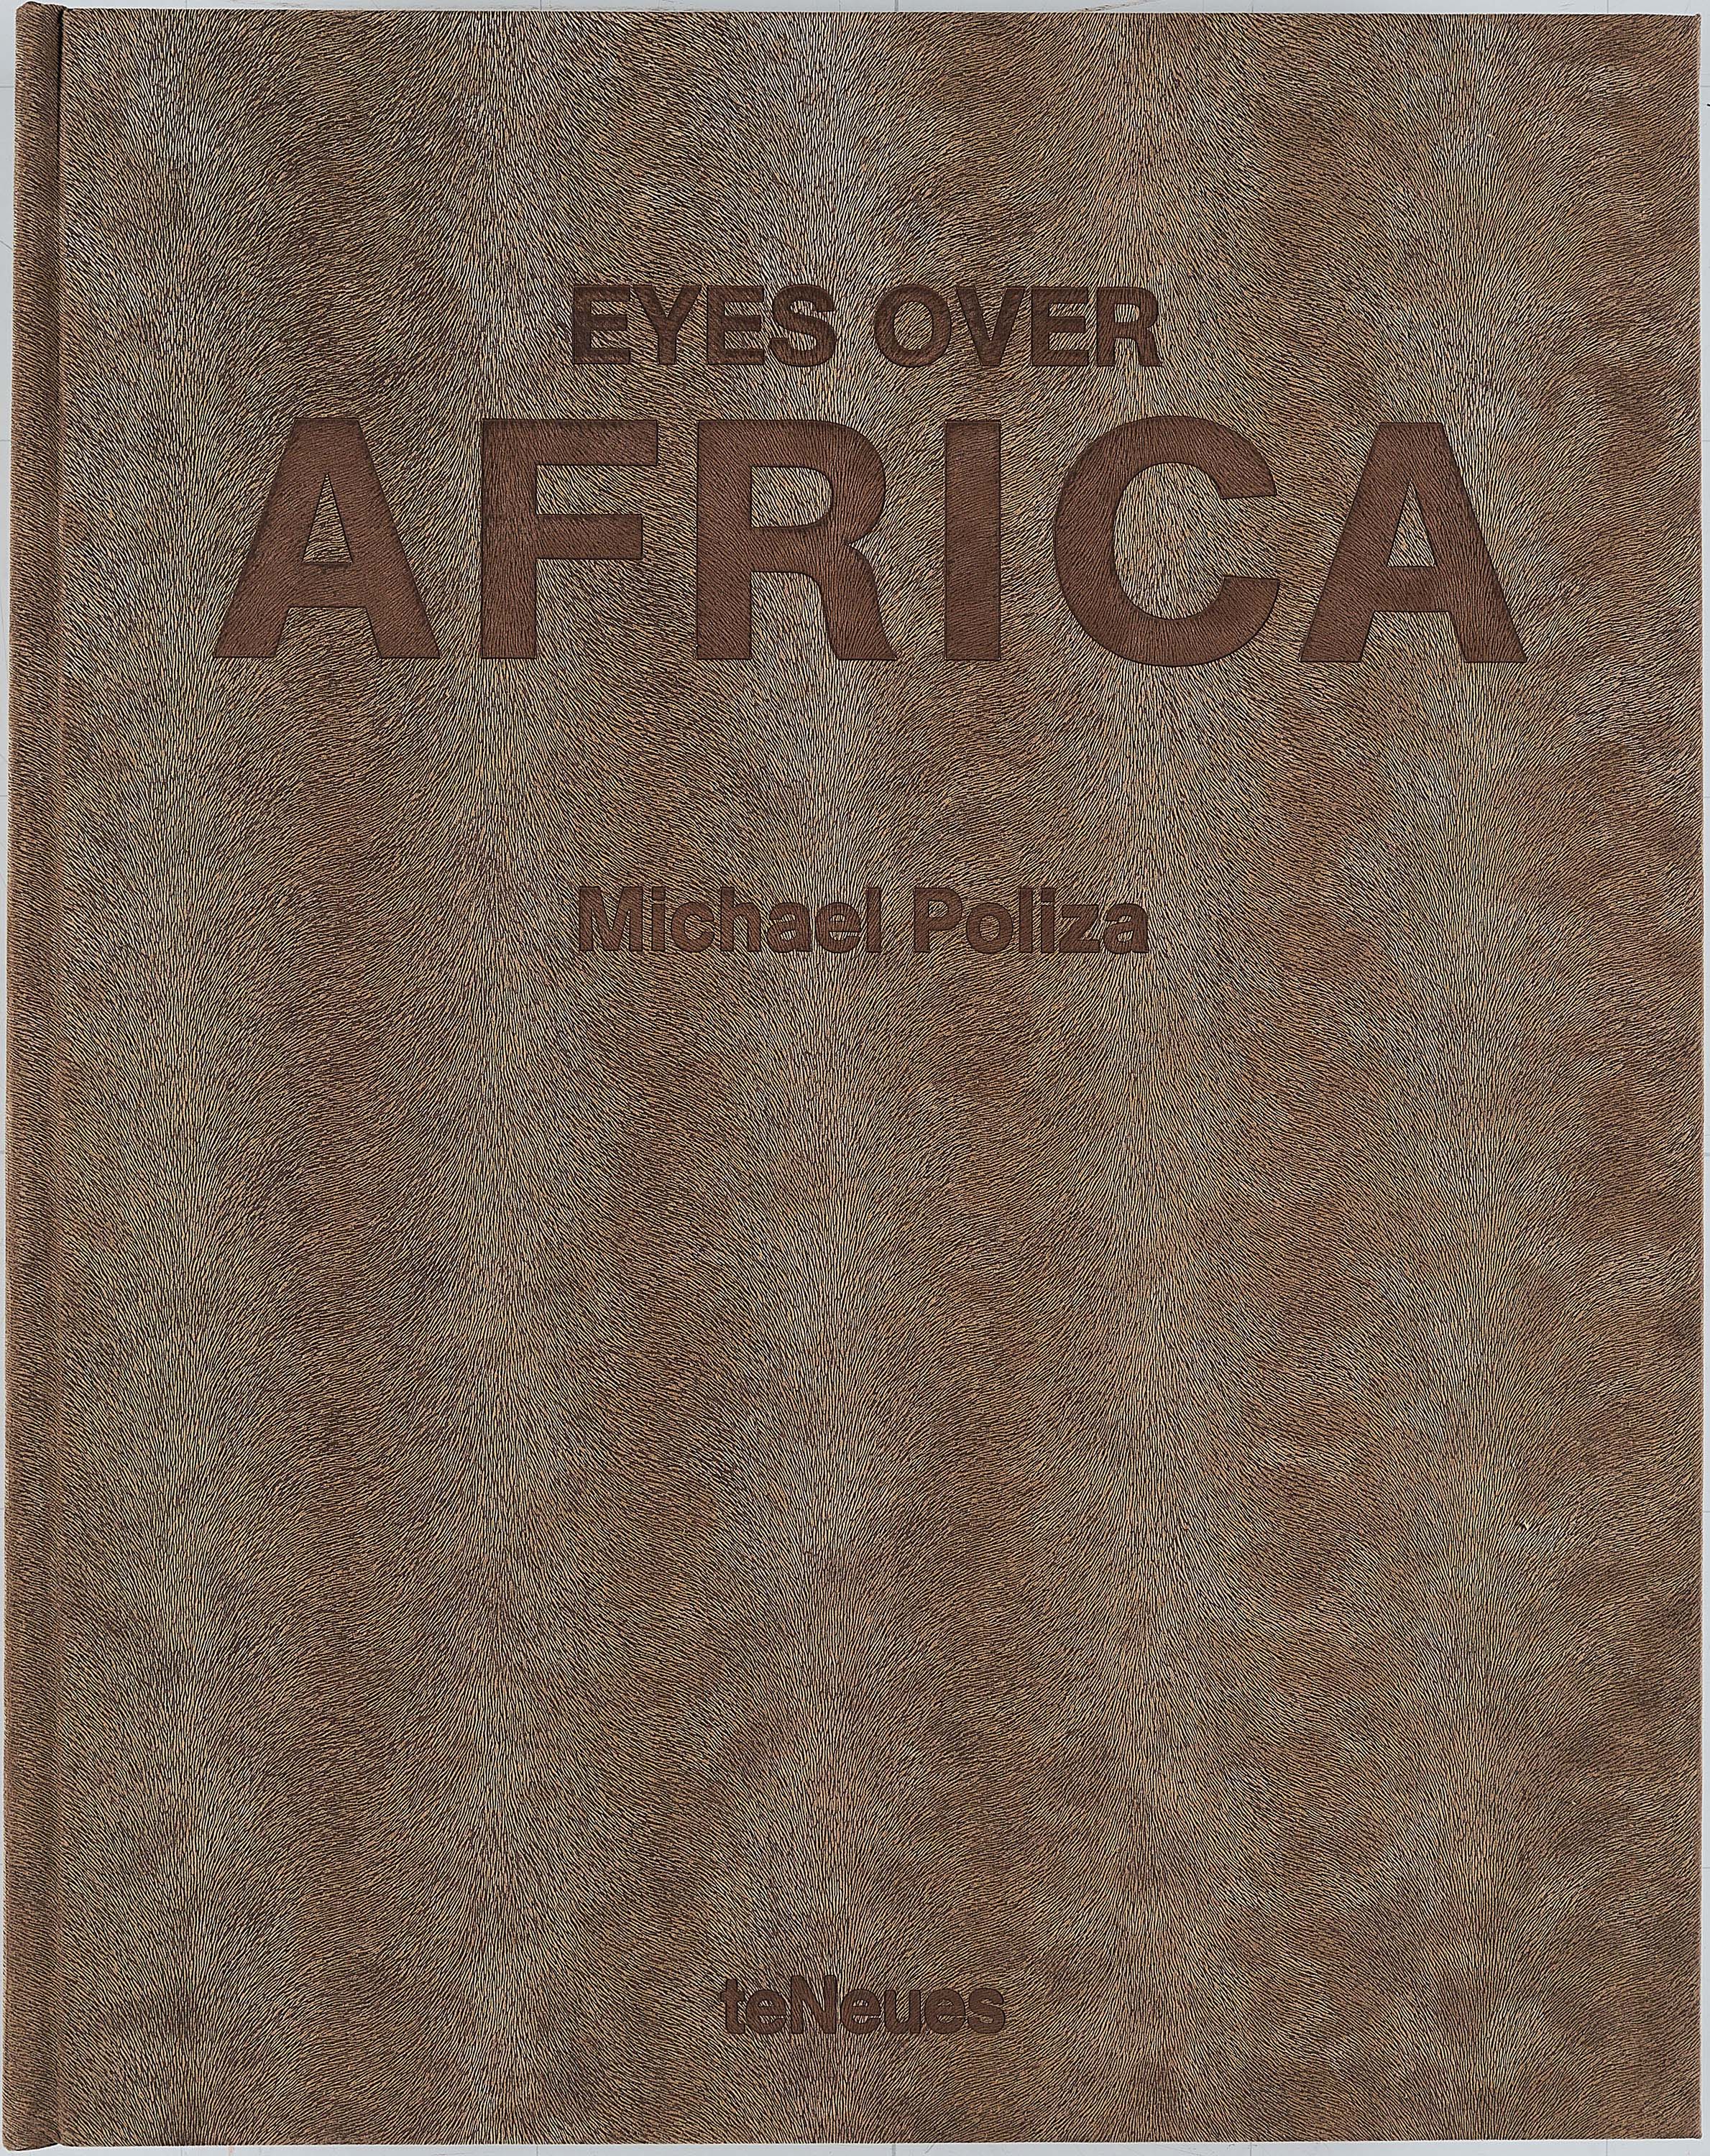 Michael Poliza - Eyes over Africa, 70621-3, Van Ham Kunstauktionen